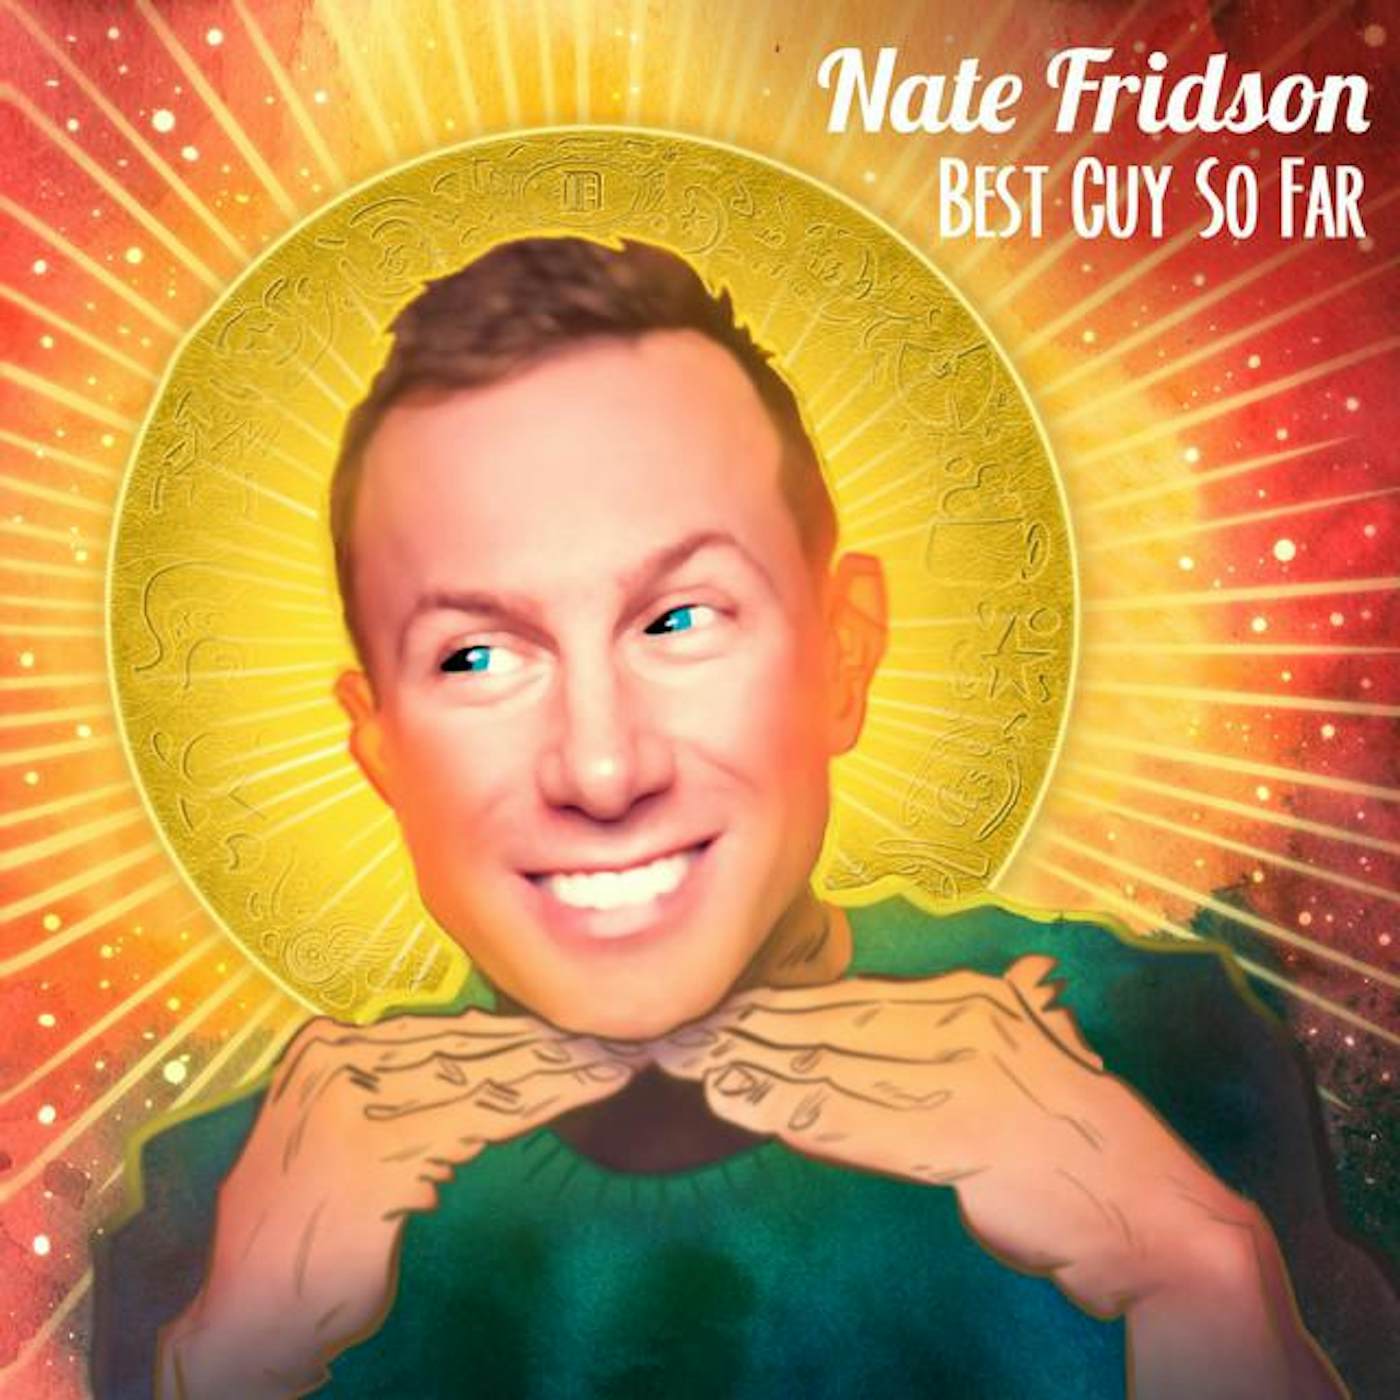 Nate Fridson